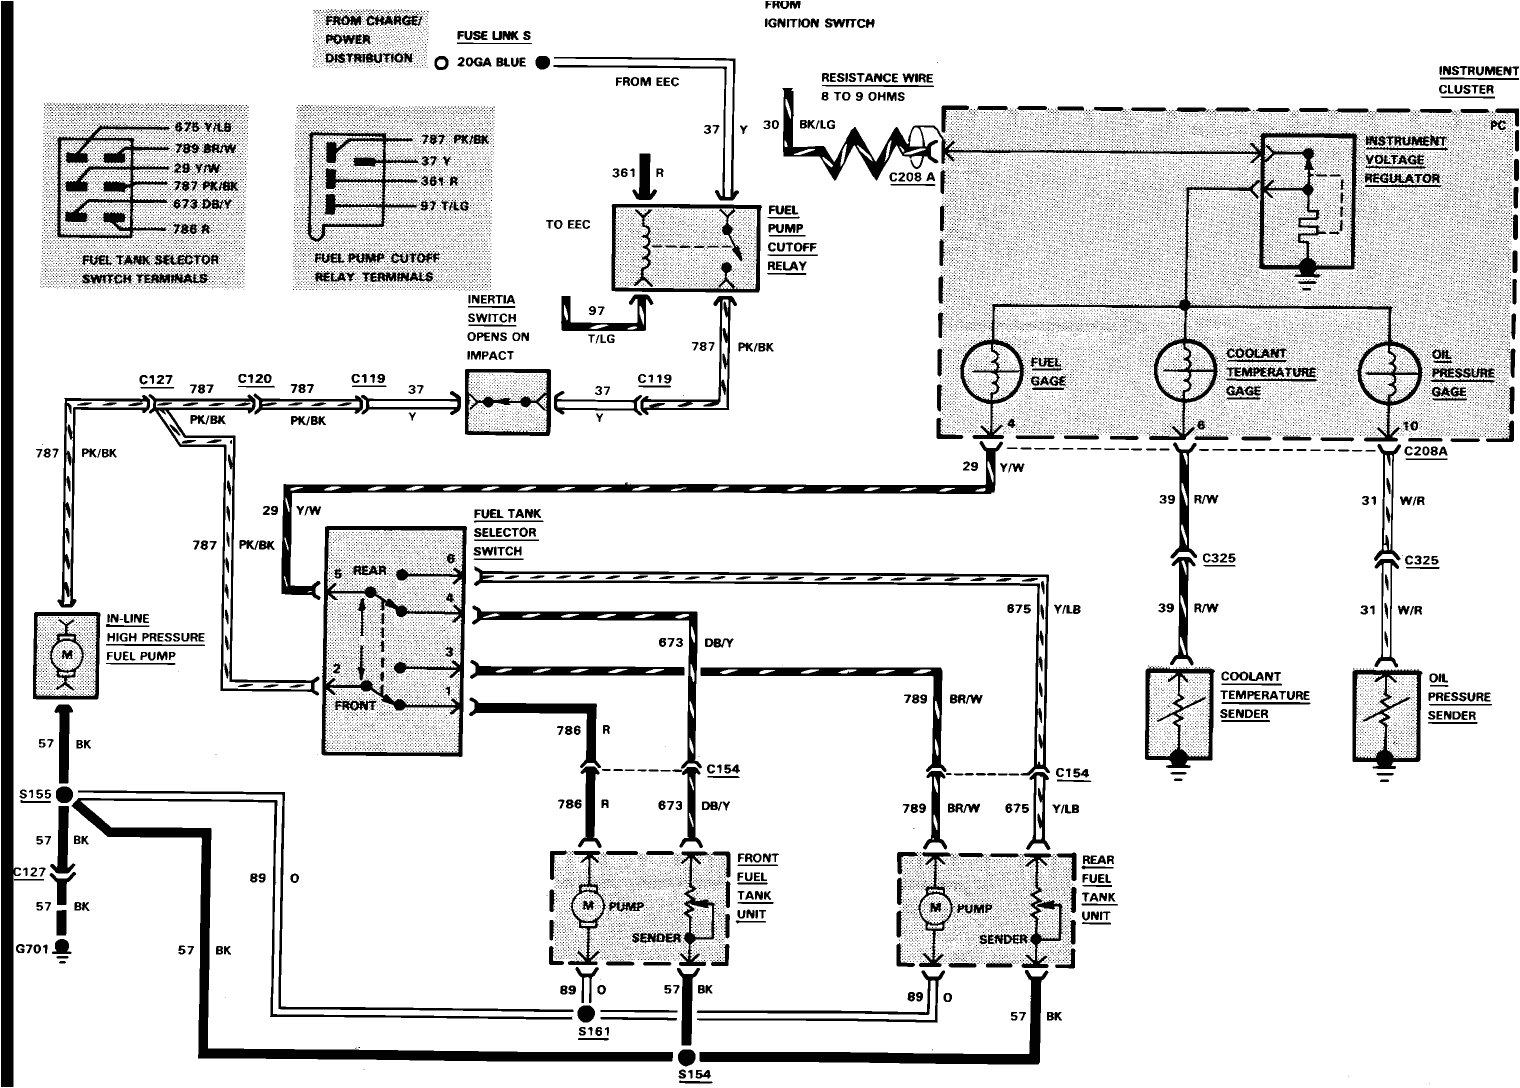 1986 ford f 350 wiring diagram blog wiring diagram 1986 ford f250 tail light wiring diagram 1986 ford f250 wiring diagram